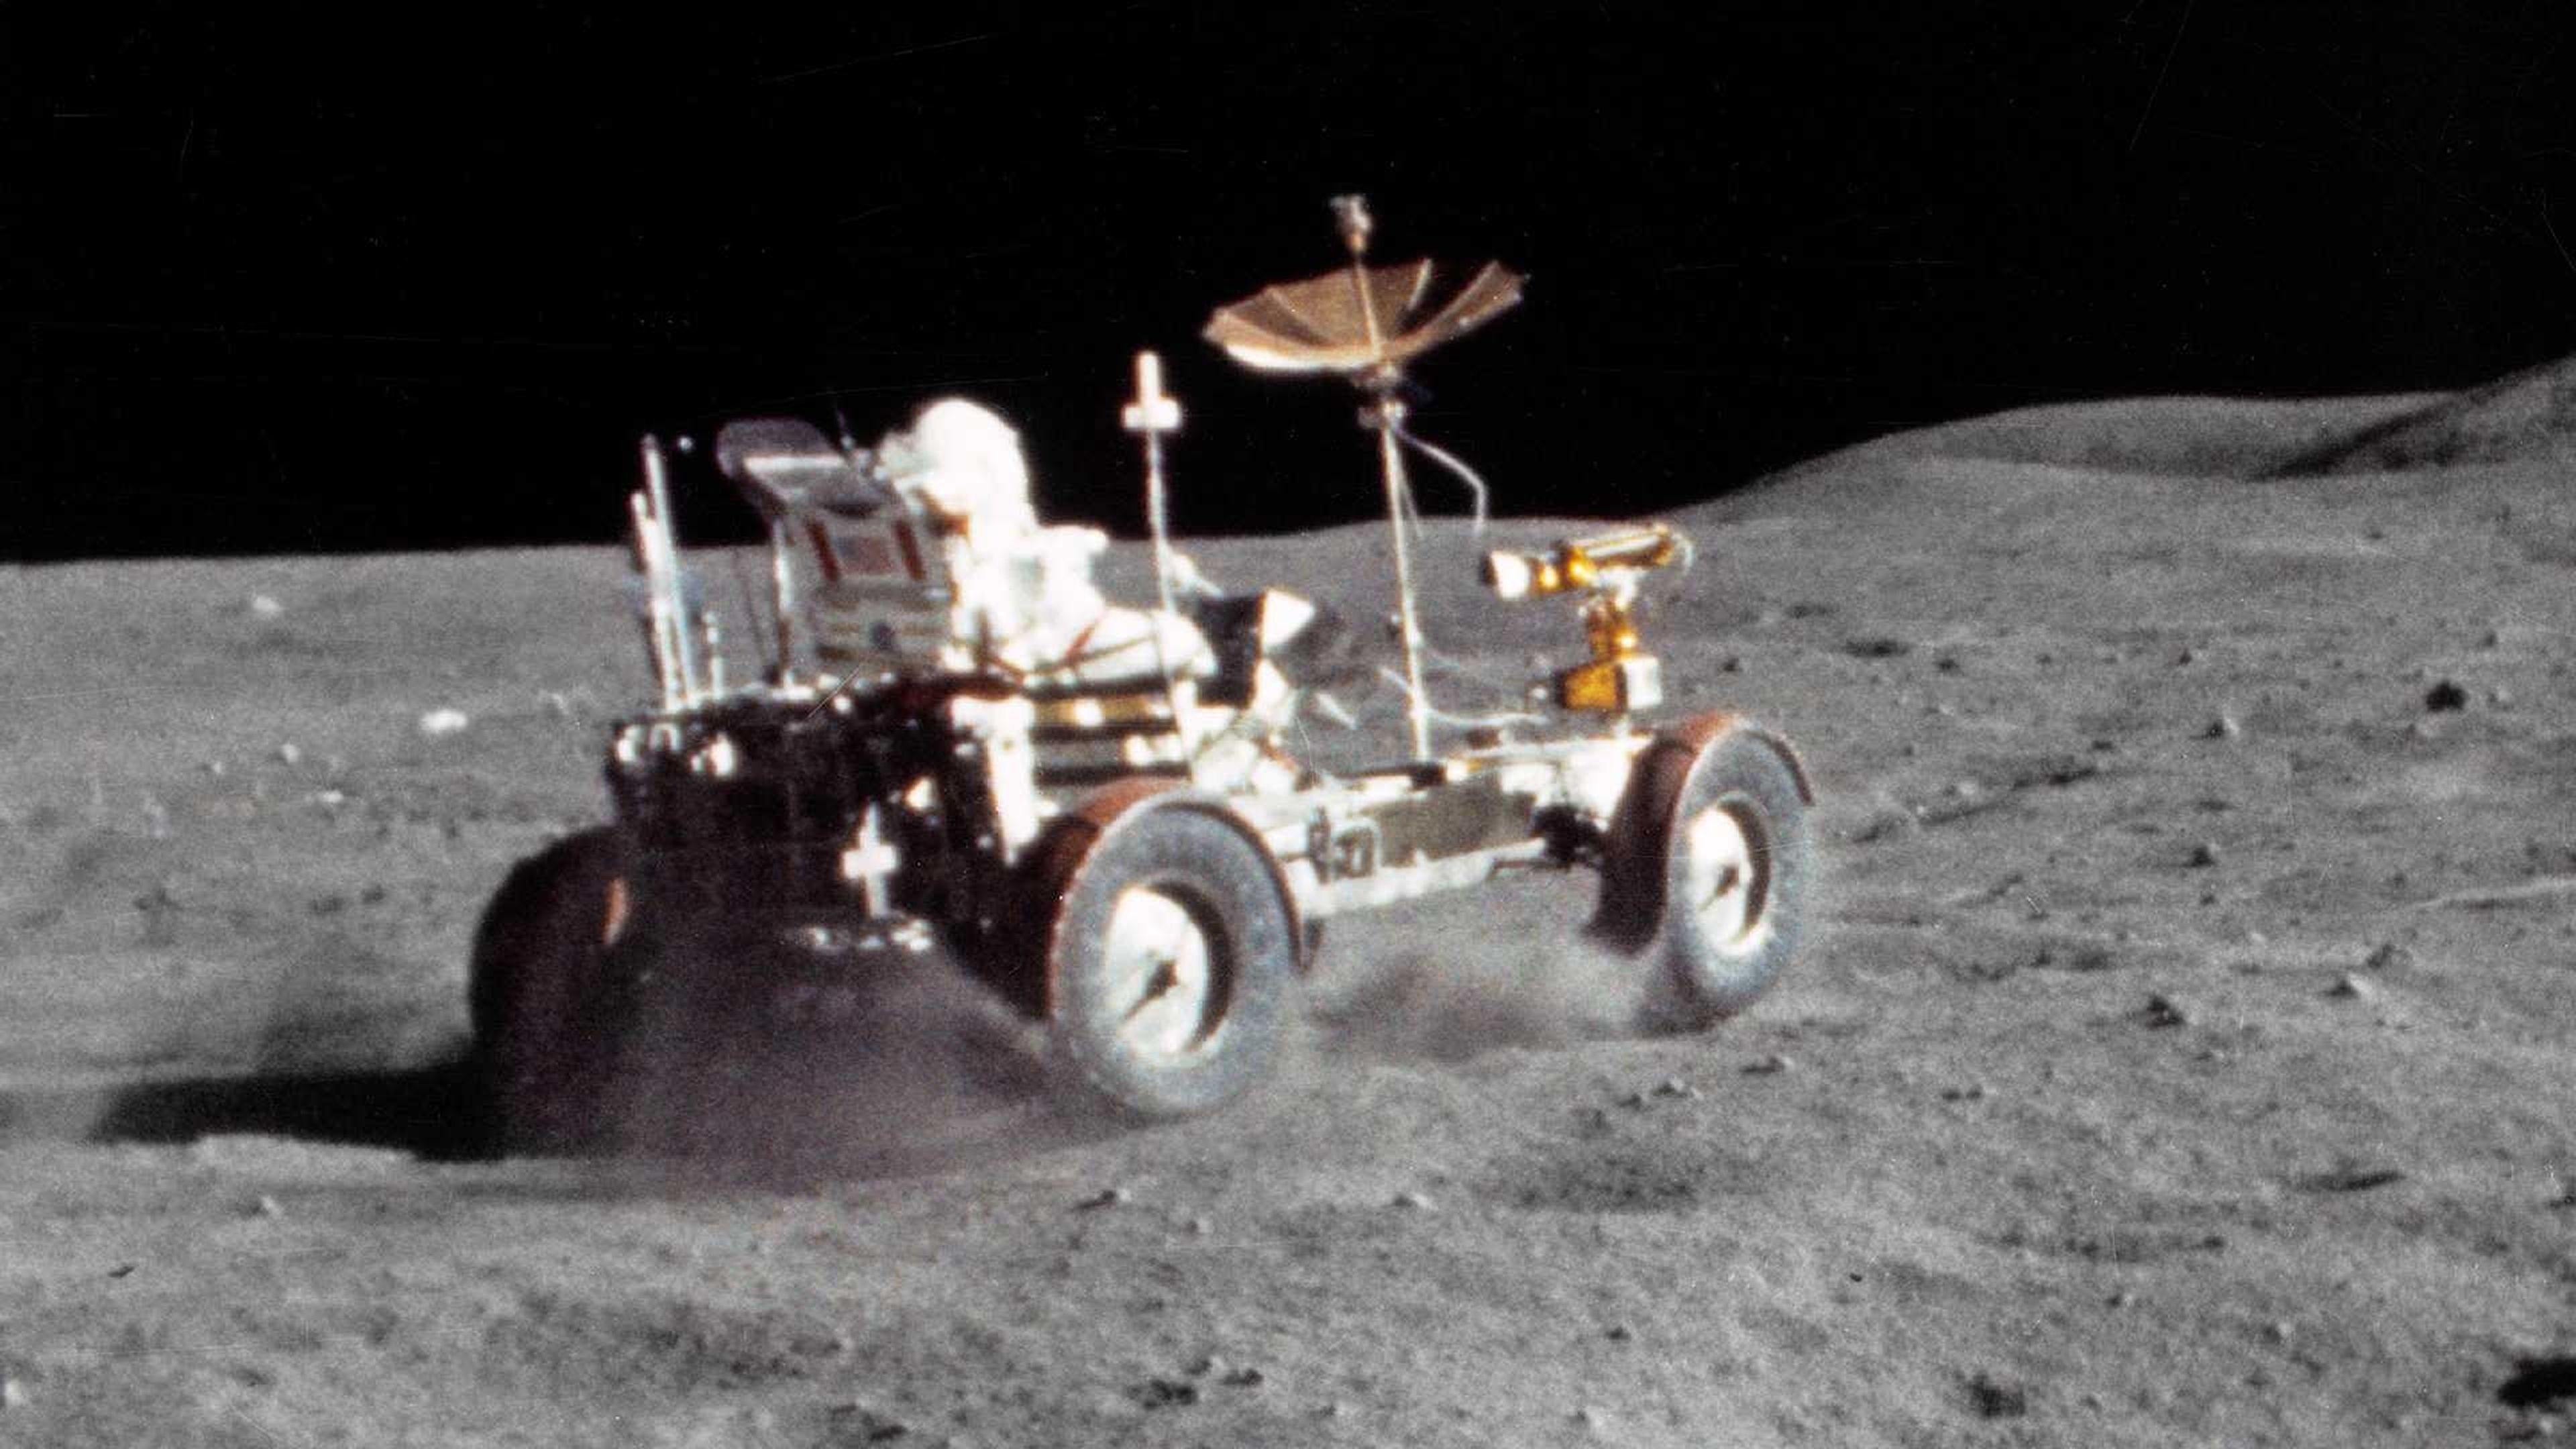 Hace 50 años ocurrió lo que hoy parece ciencia-ficción: astronautas conduciendo un buggy eléctrico en la Luna